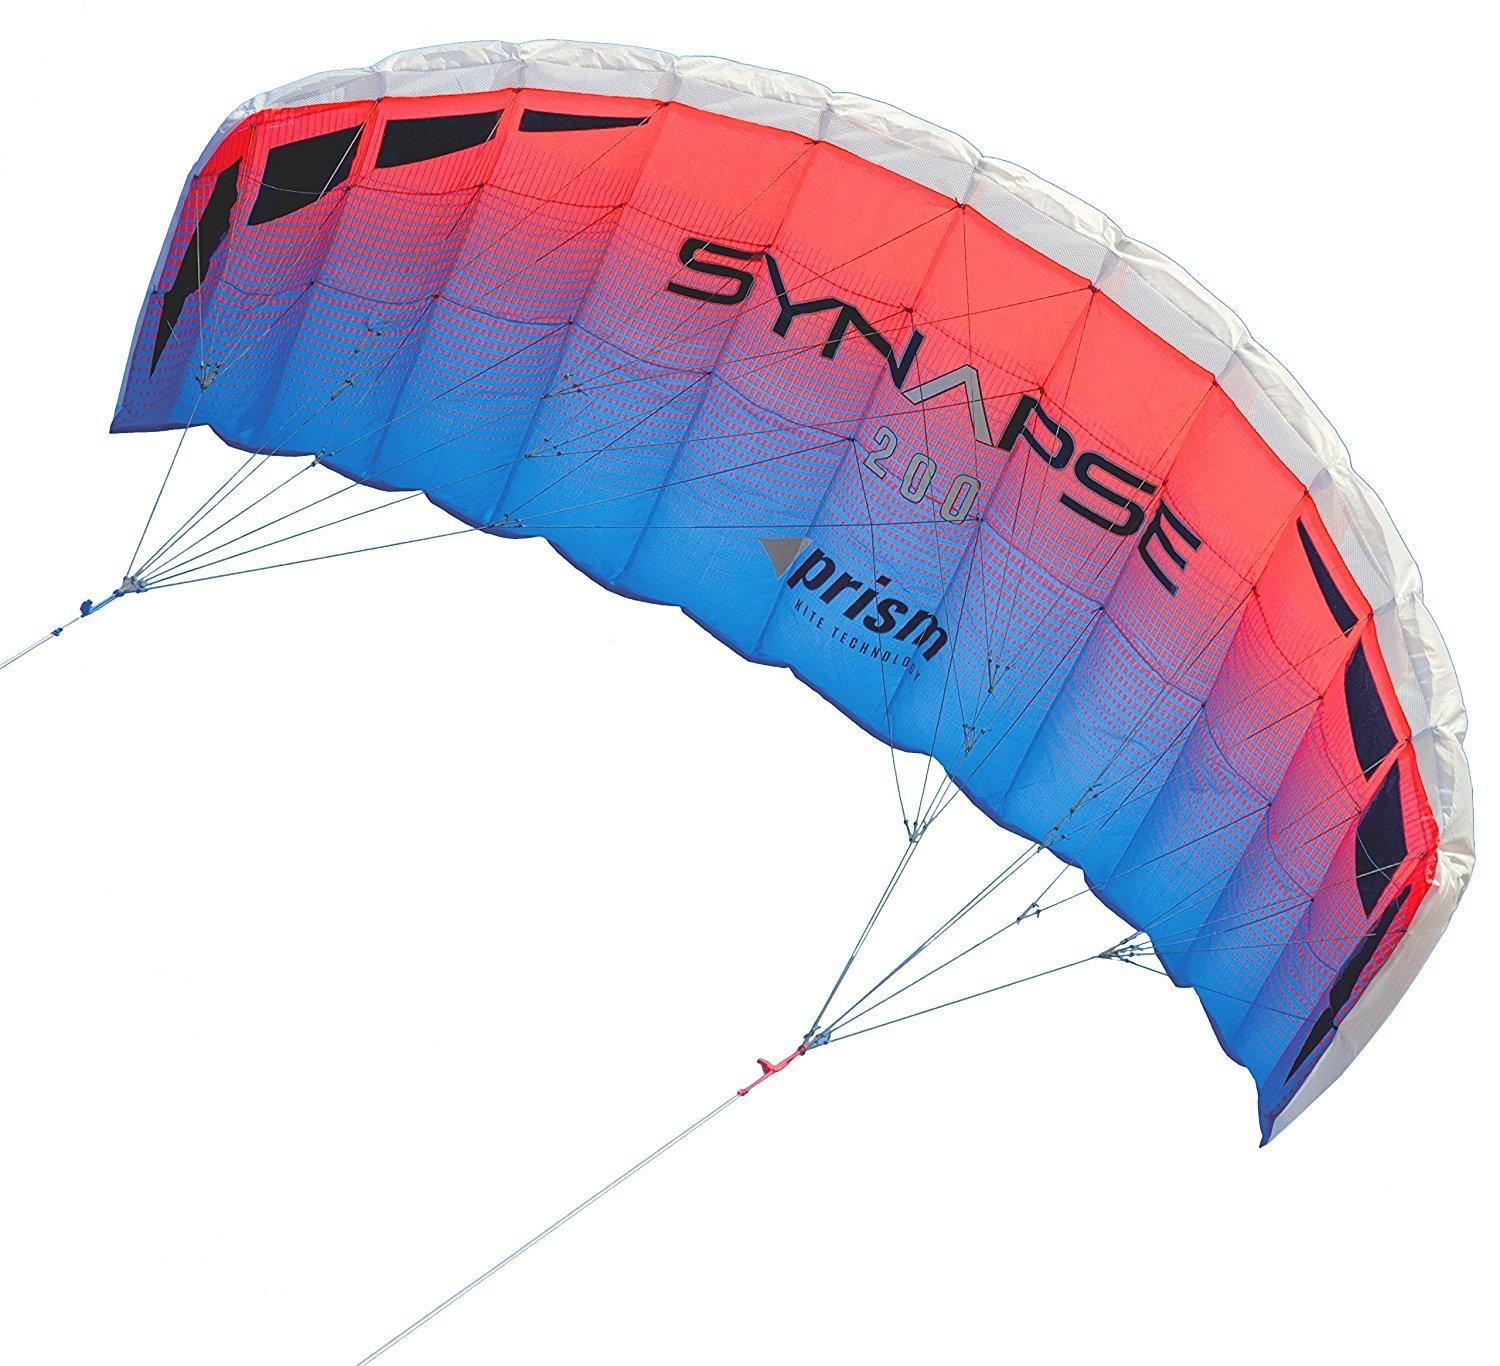 Synapse 170 – Prism Kites